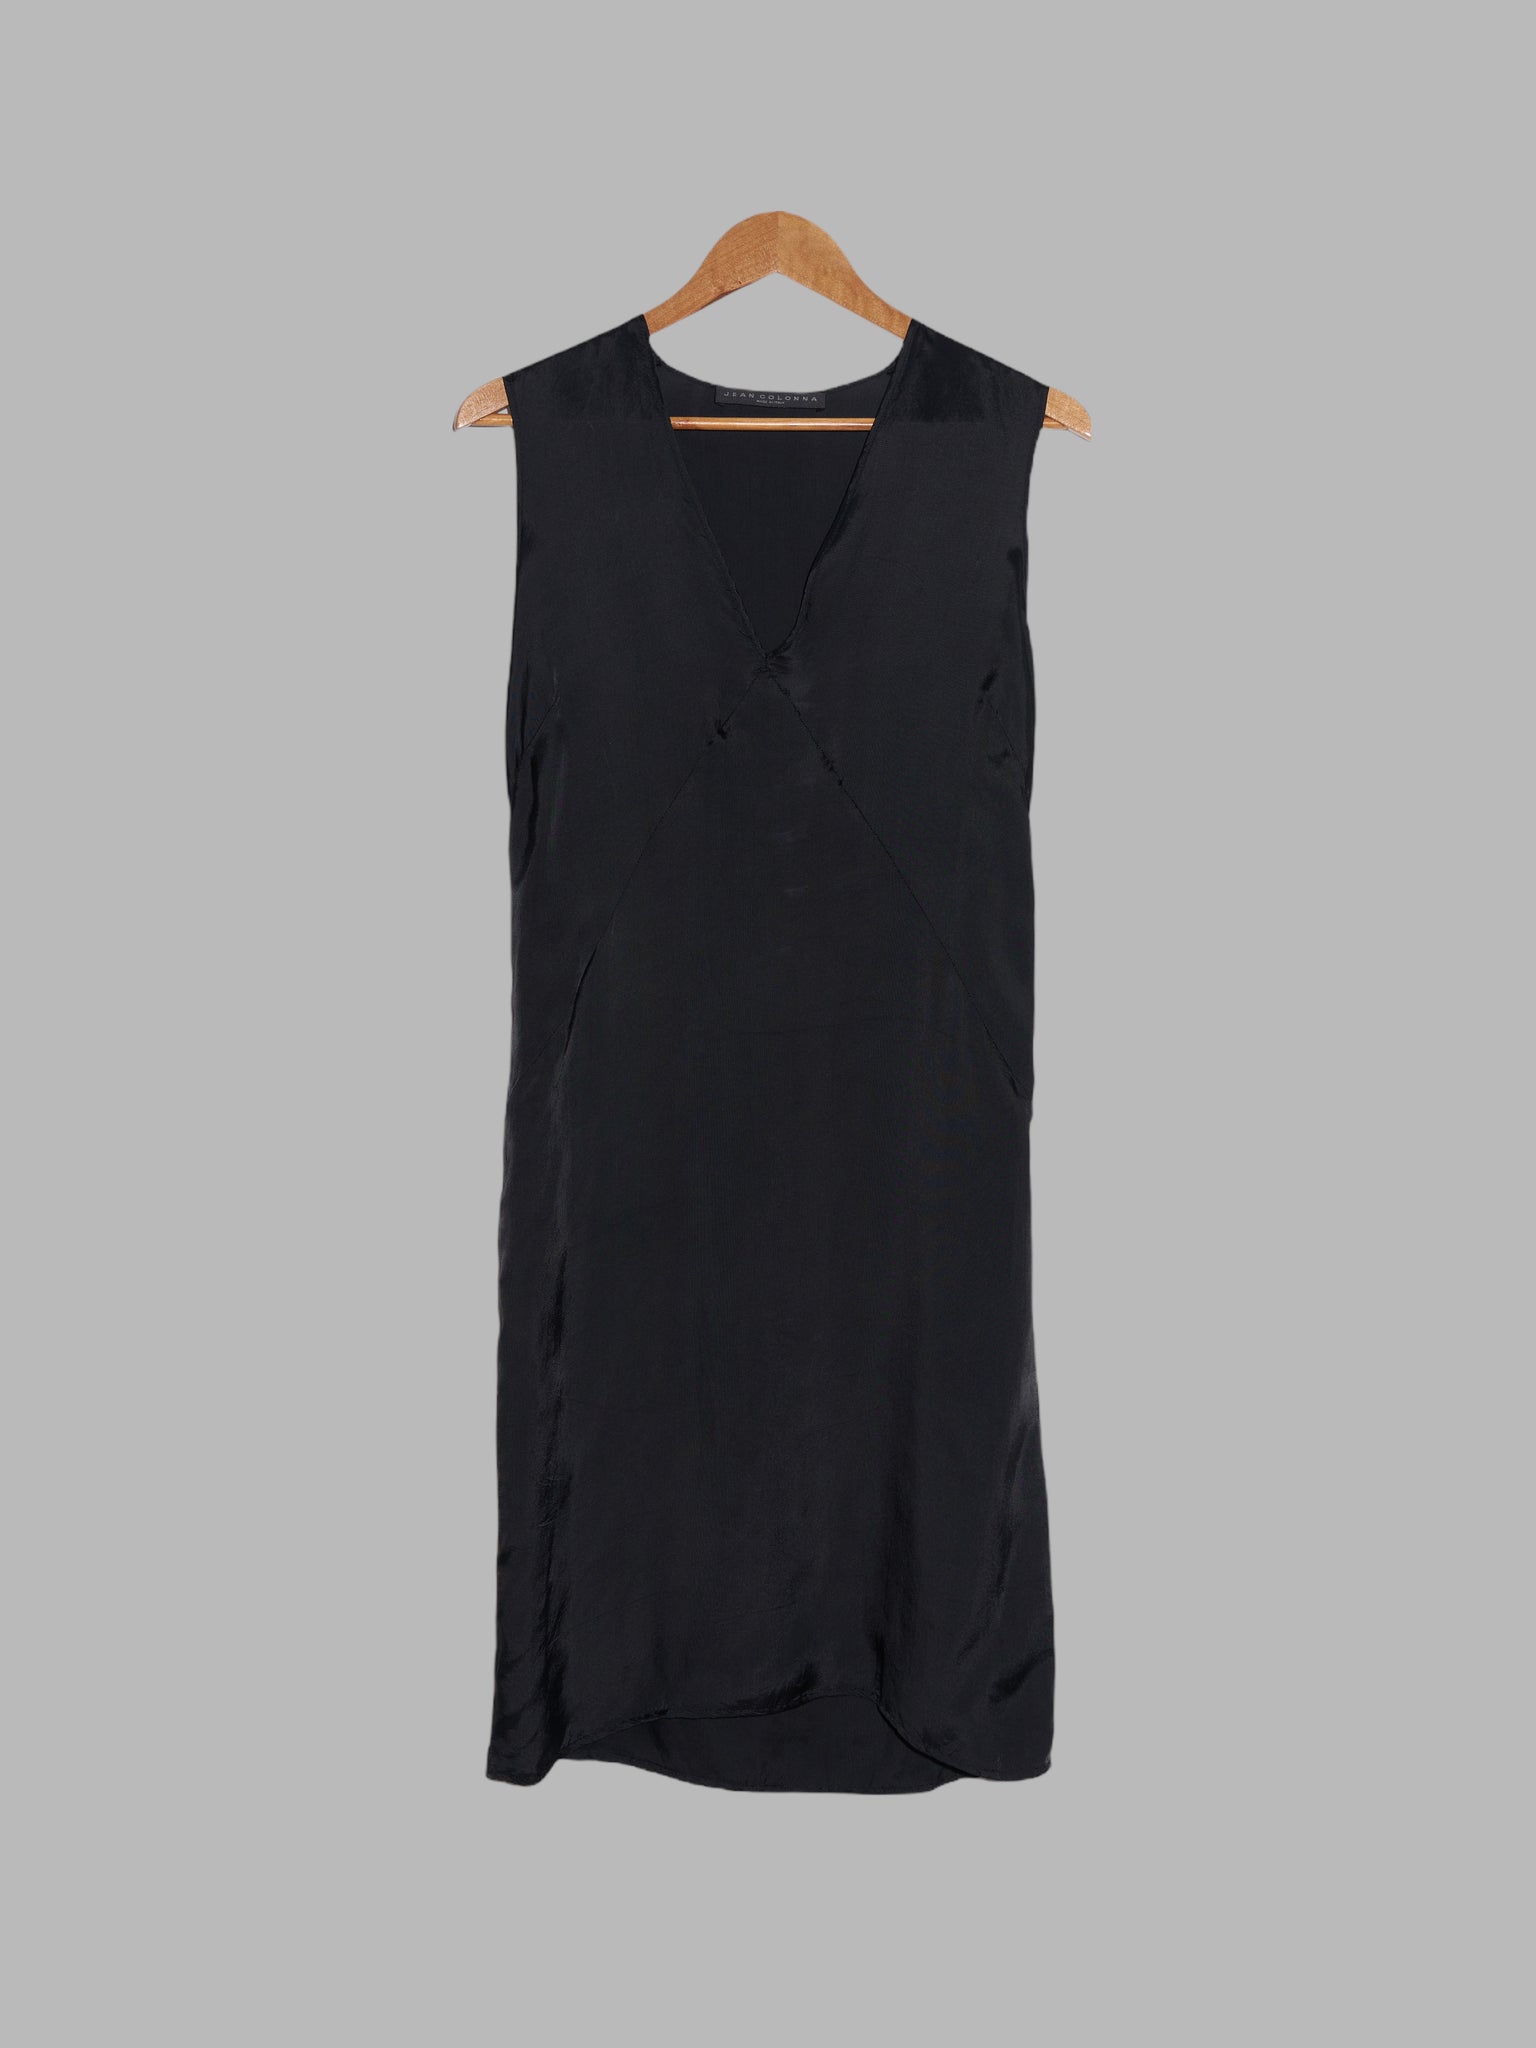 Jean Colonna sheeny black rayon v-neck sleeveless dress - size 38